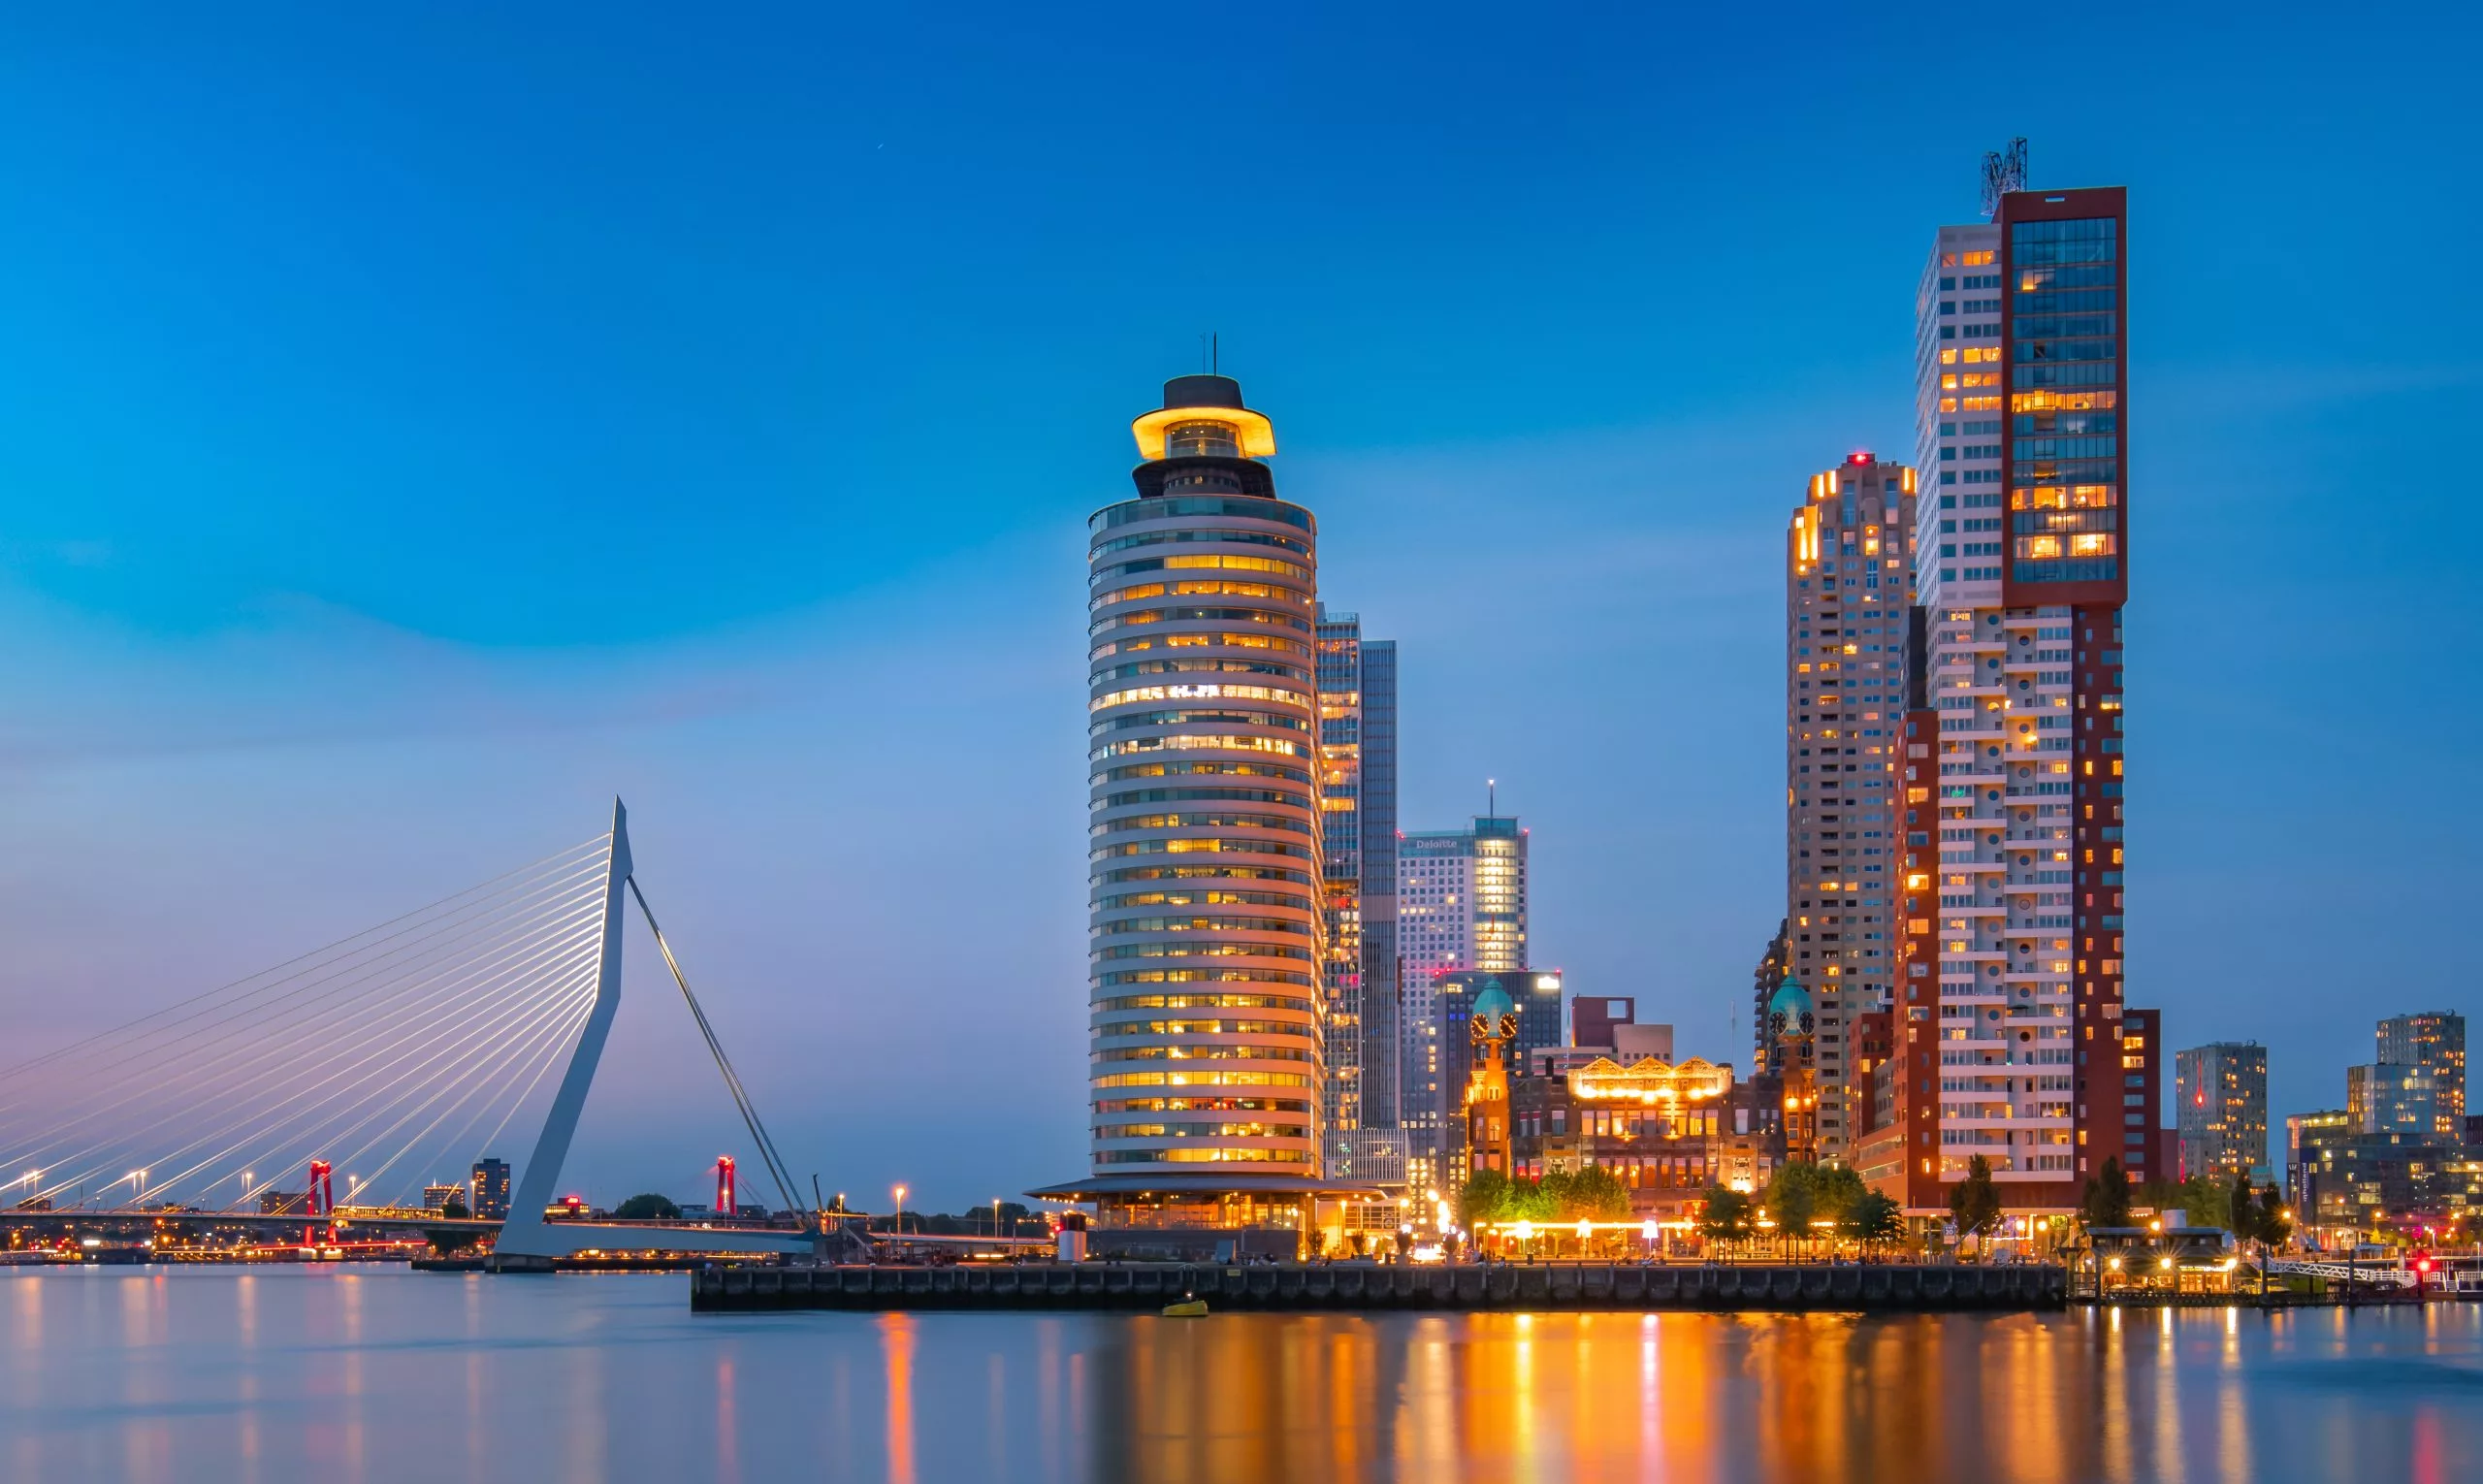 Een kijkje op de Wilhelminapier tijdens het blauwe uurtje (Rotterdam)